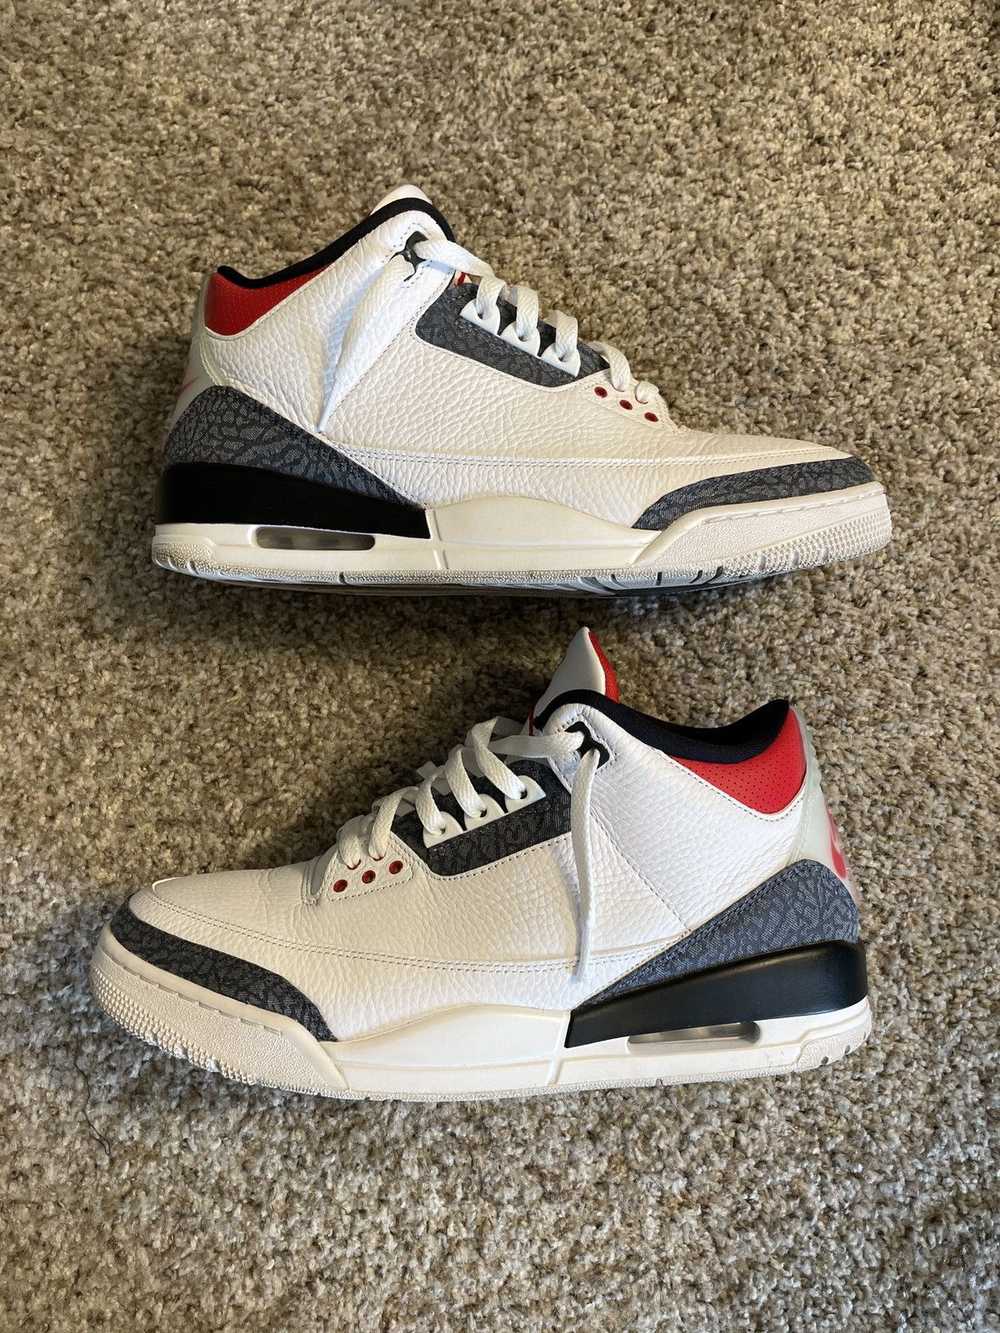 Jordan Brand × Nike Jordan 3 Retro “Denim” - image 3